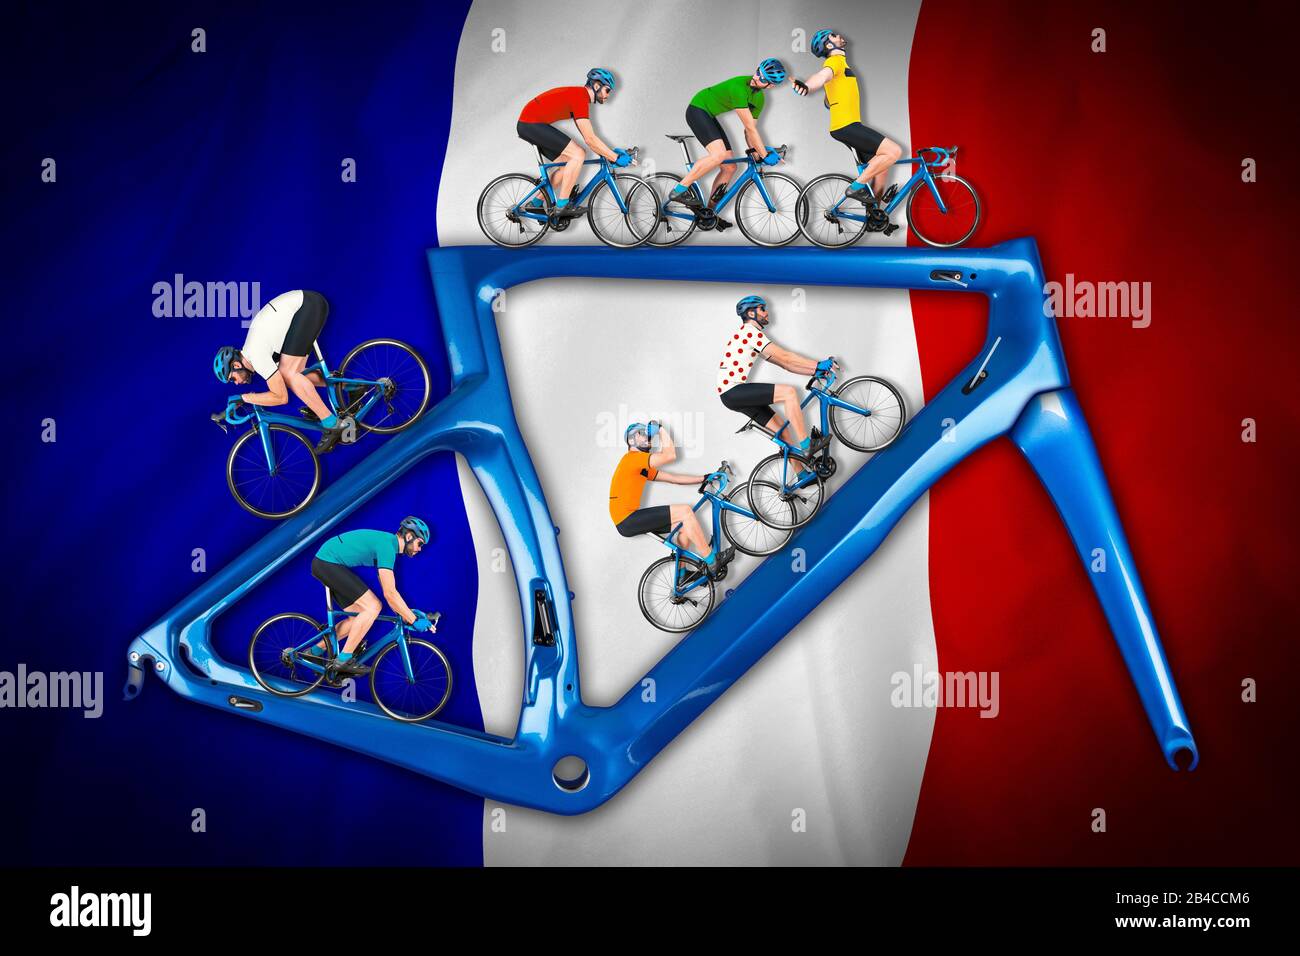 Radfahrer im Wettkampftrikot auf Rennrad auf einem modernen blauen Carbonrahmen auf blau-weißer französischer Flagge Stockfoto